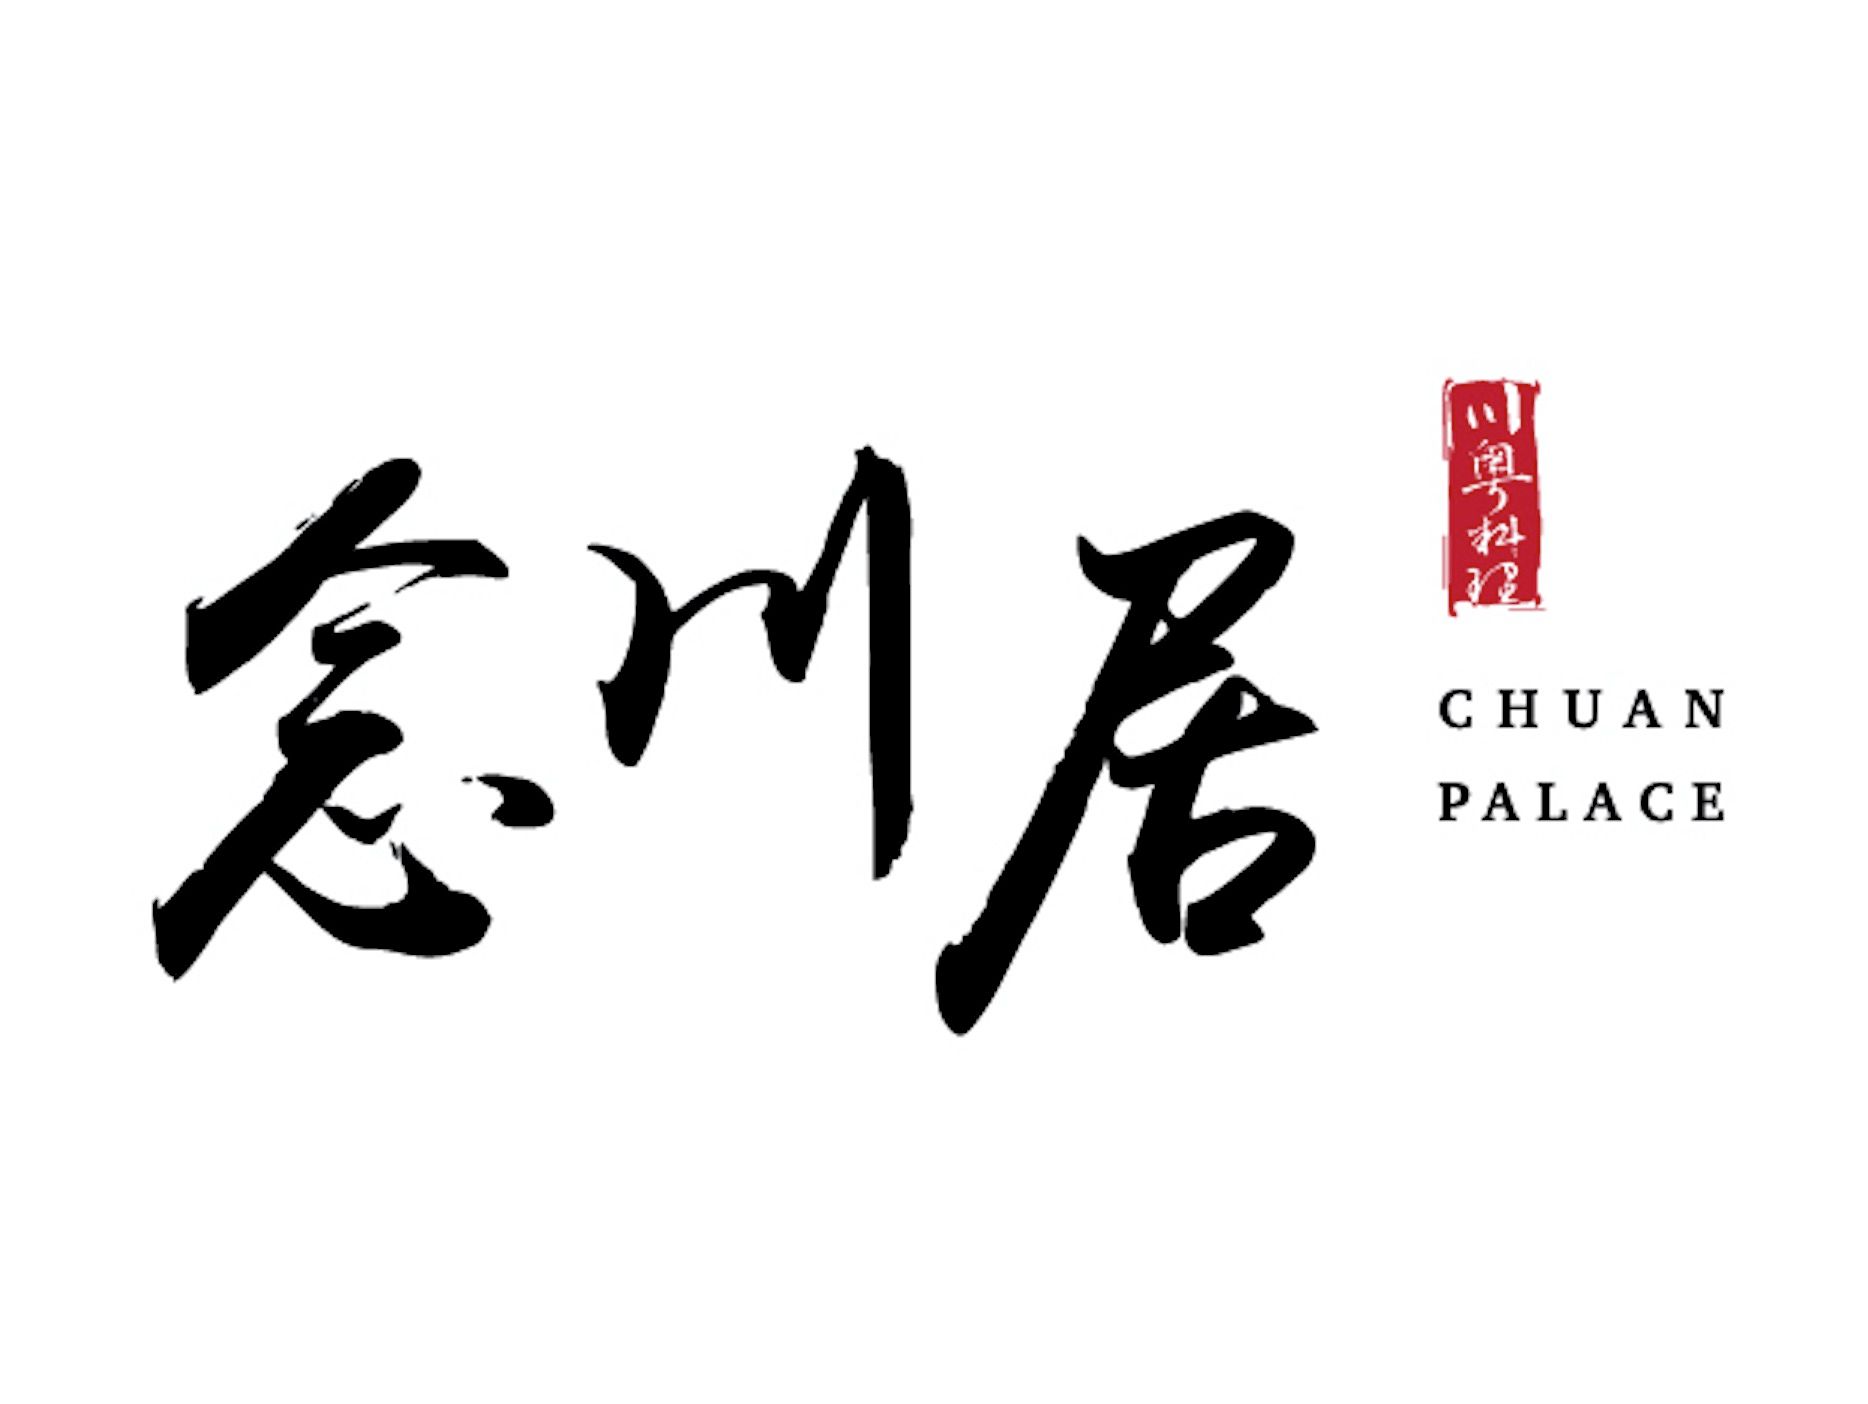 Chuan Palace 念川居 